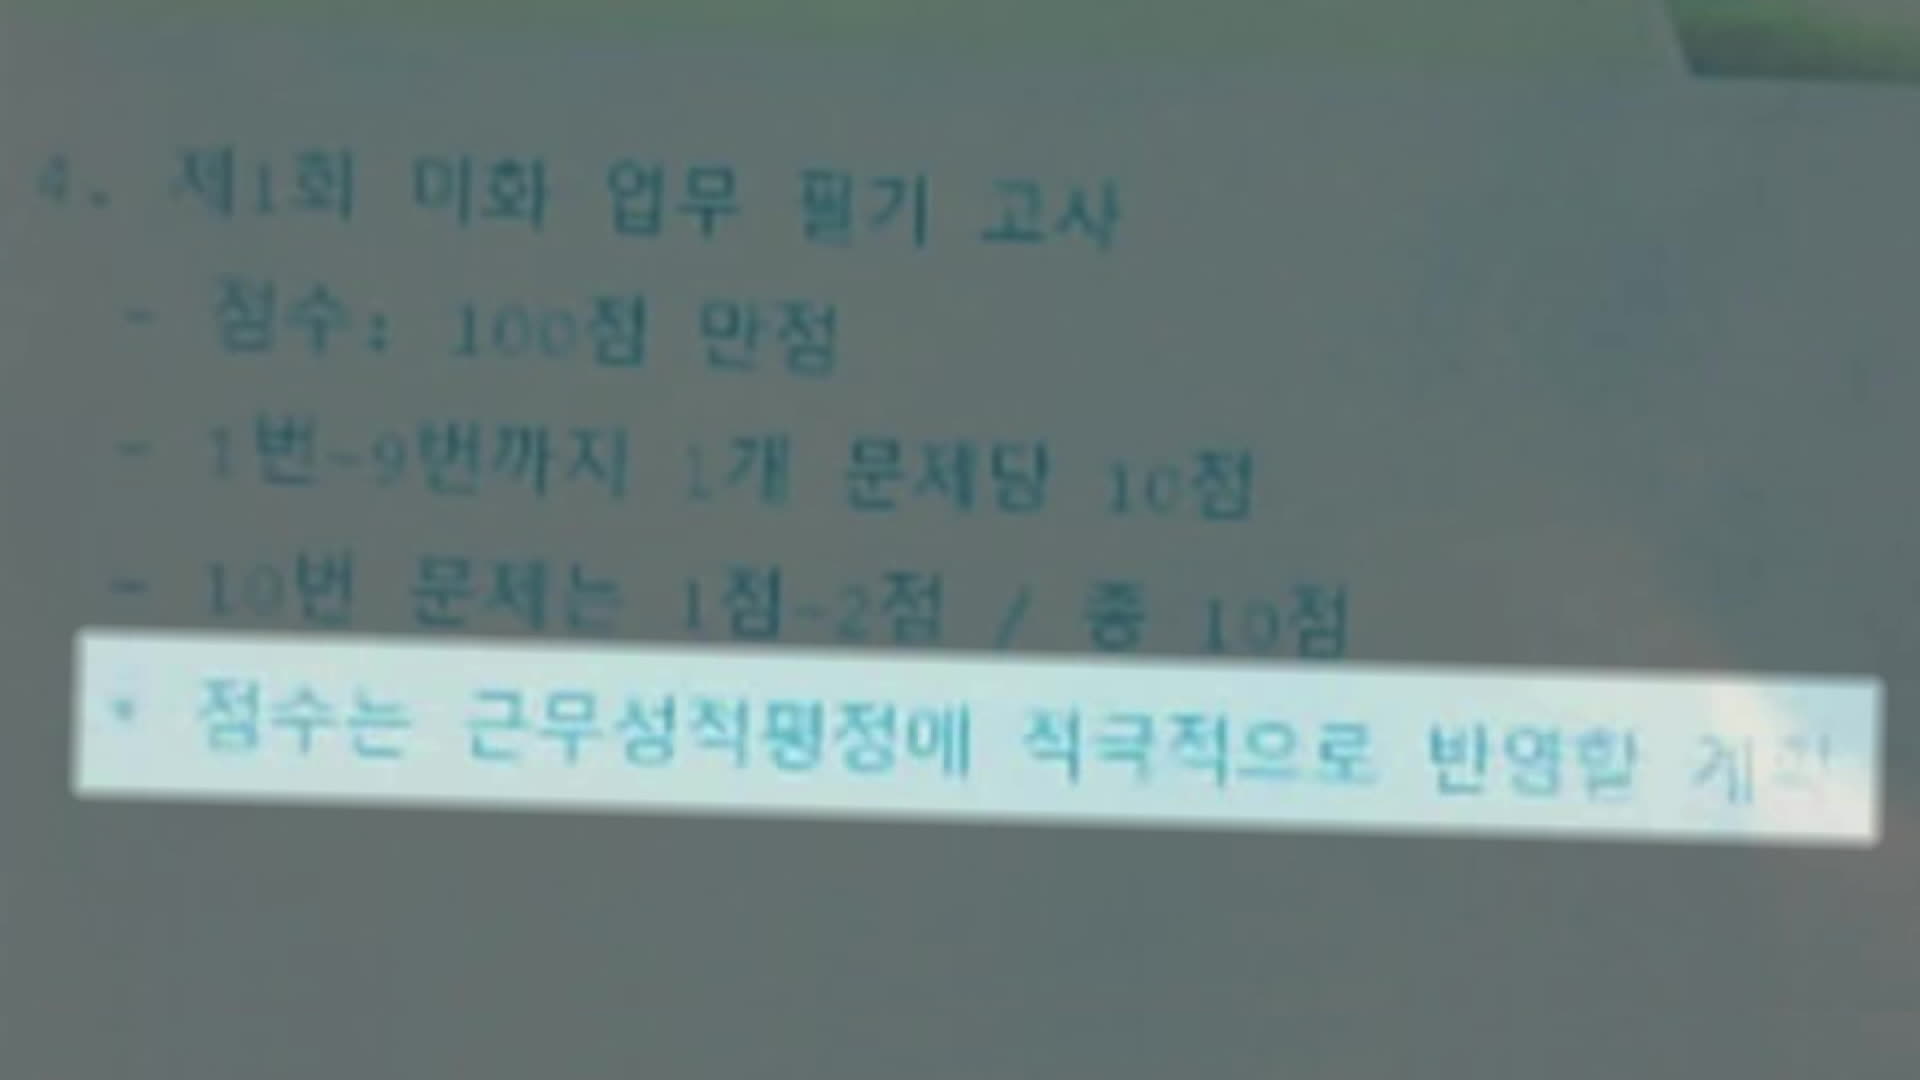 지난달 9일, 서울대 청소노동자들이 ‘필기 고사’를 봤을 때 관리팀장이 화면에 띄운 안내문